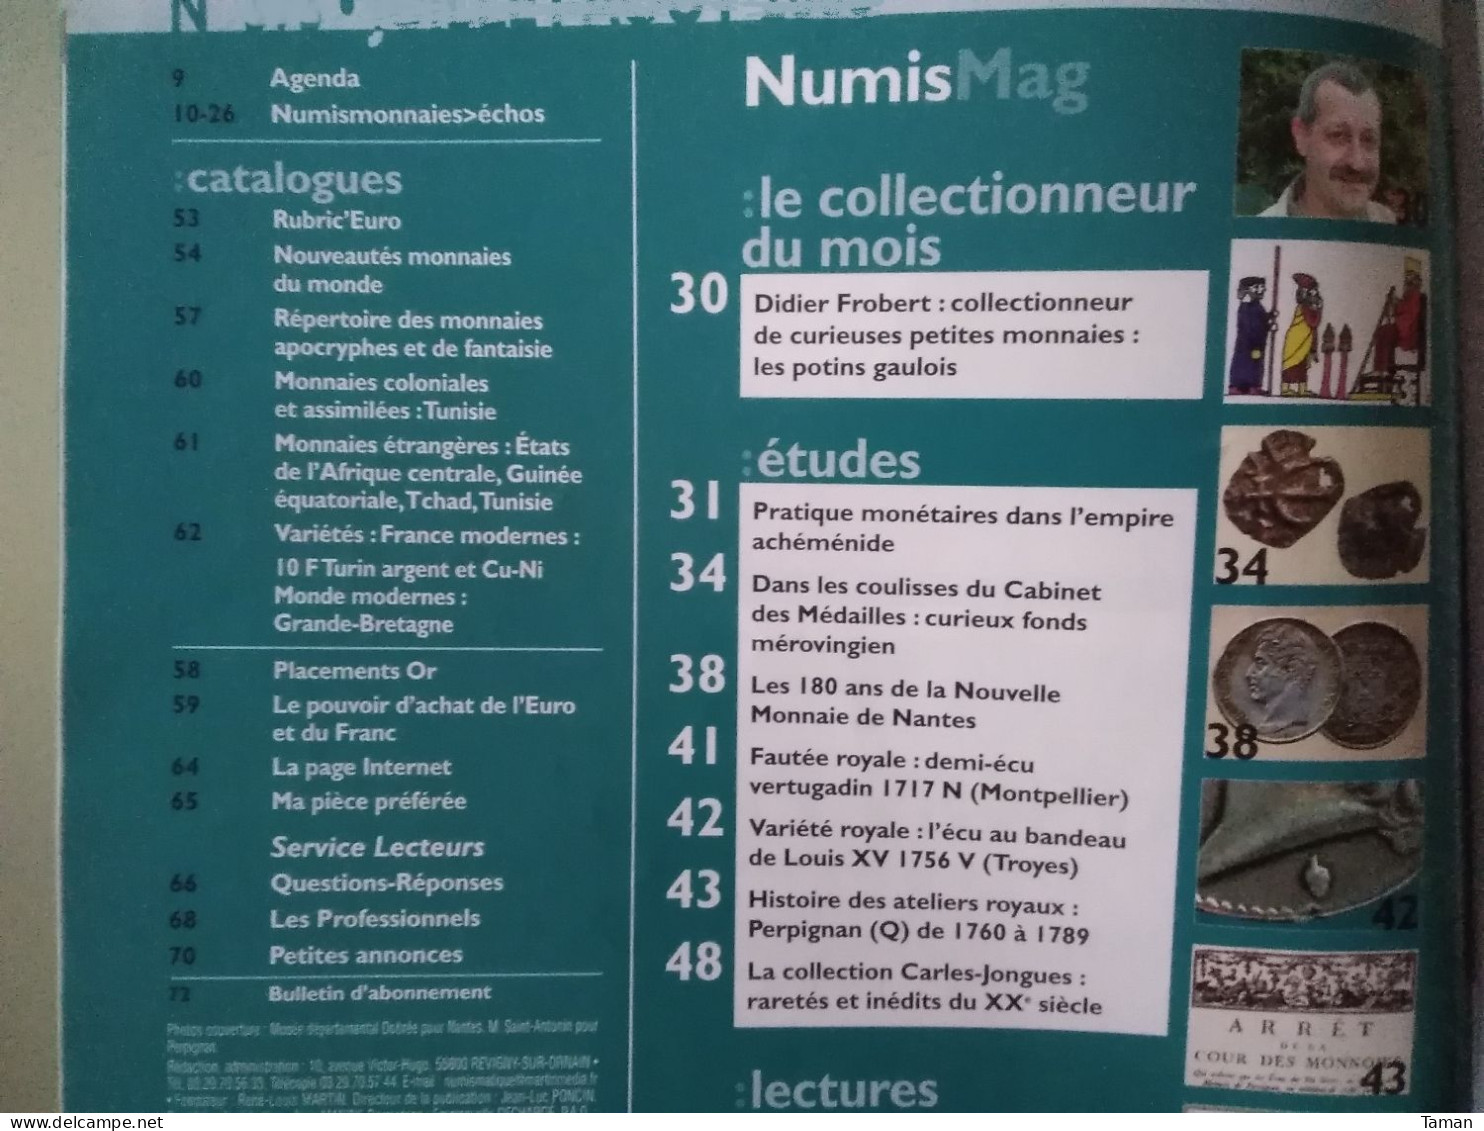 Numismatique & Change - Potins Gaulois - L'empire Achéménide - Mérovingien - Nantes - Perpignan Atelier Q - Français